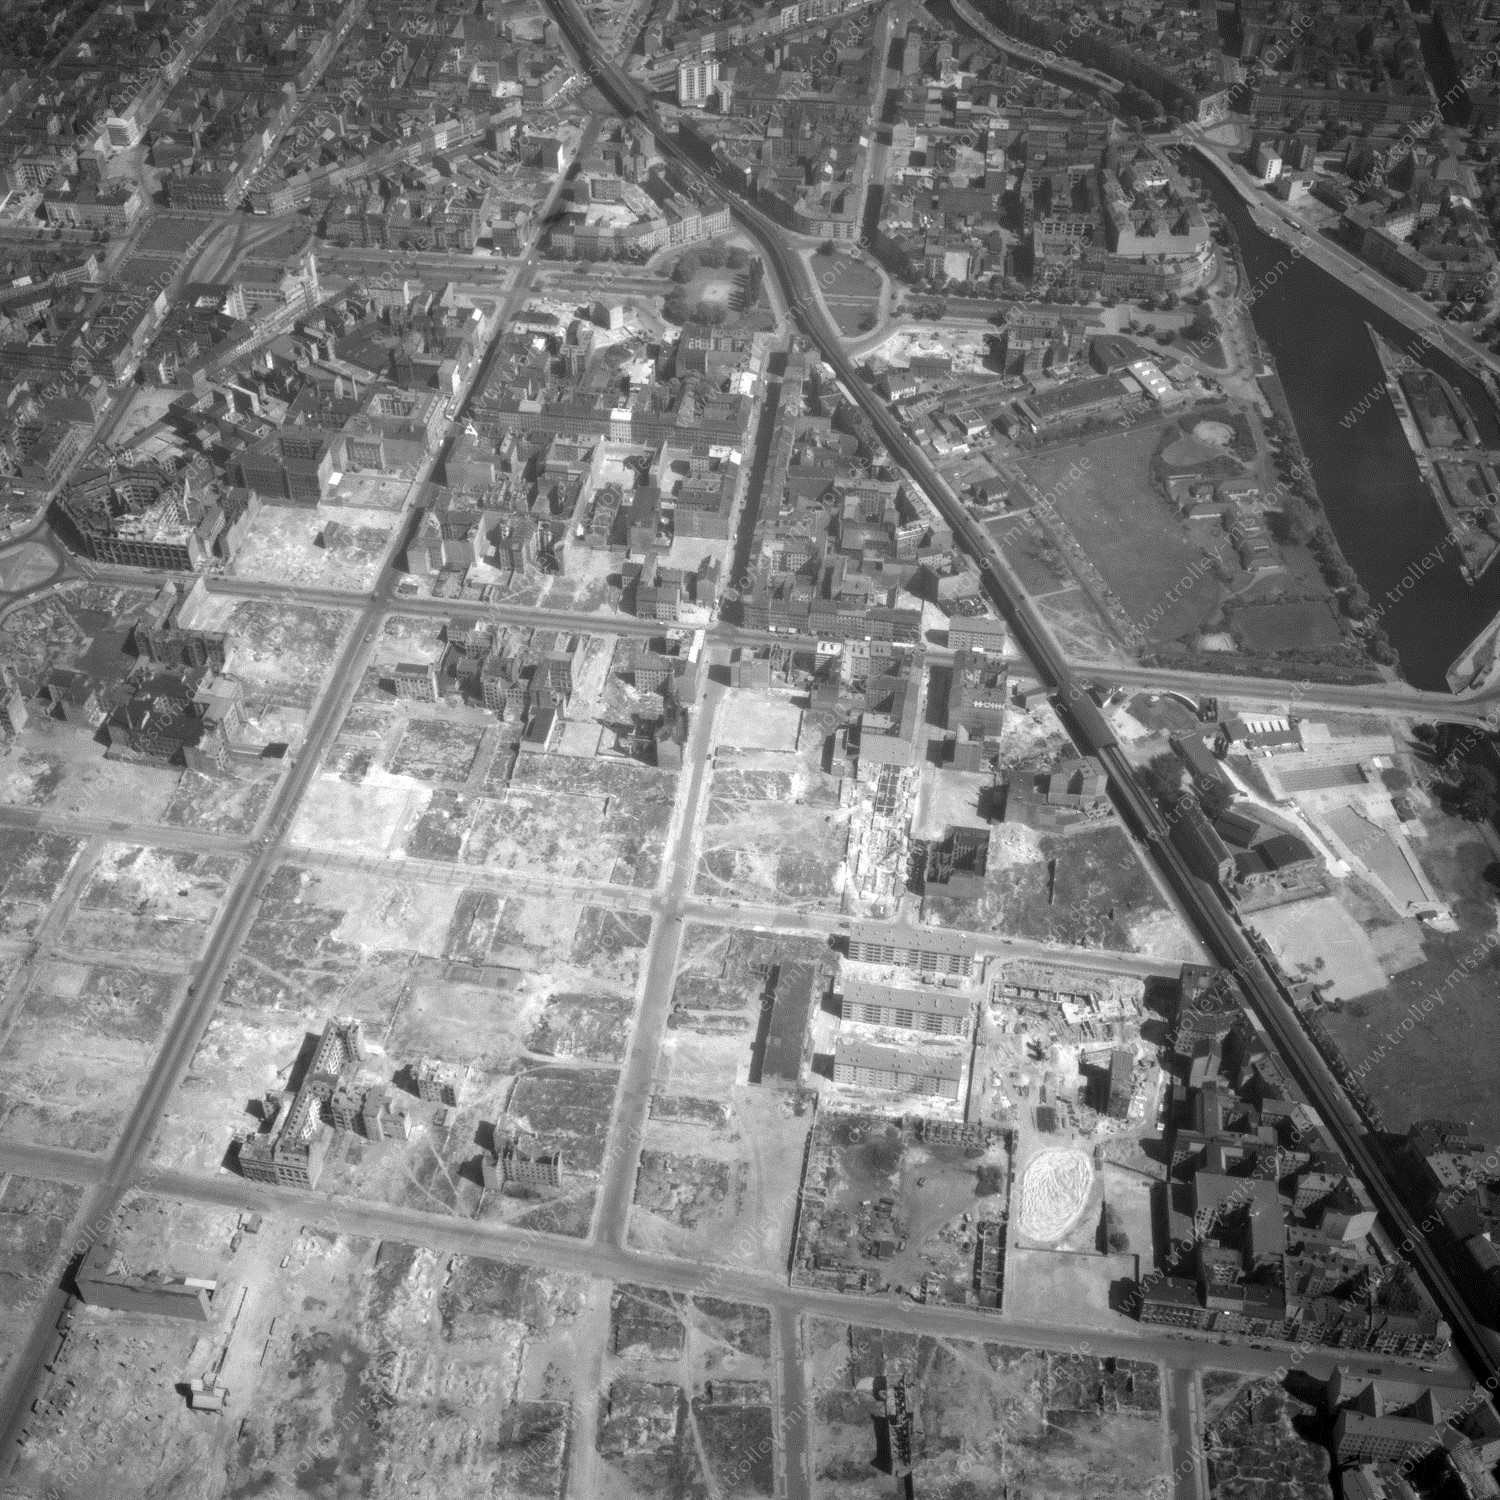 Alte Fotos und Luftbilder von Berlin - Luftbildaufnahme Nr. 08 - Historische Luftaufnahmen von West-Berlin aus dem Jahr 1954 - Flugstrecke Kilo